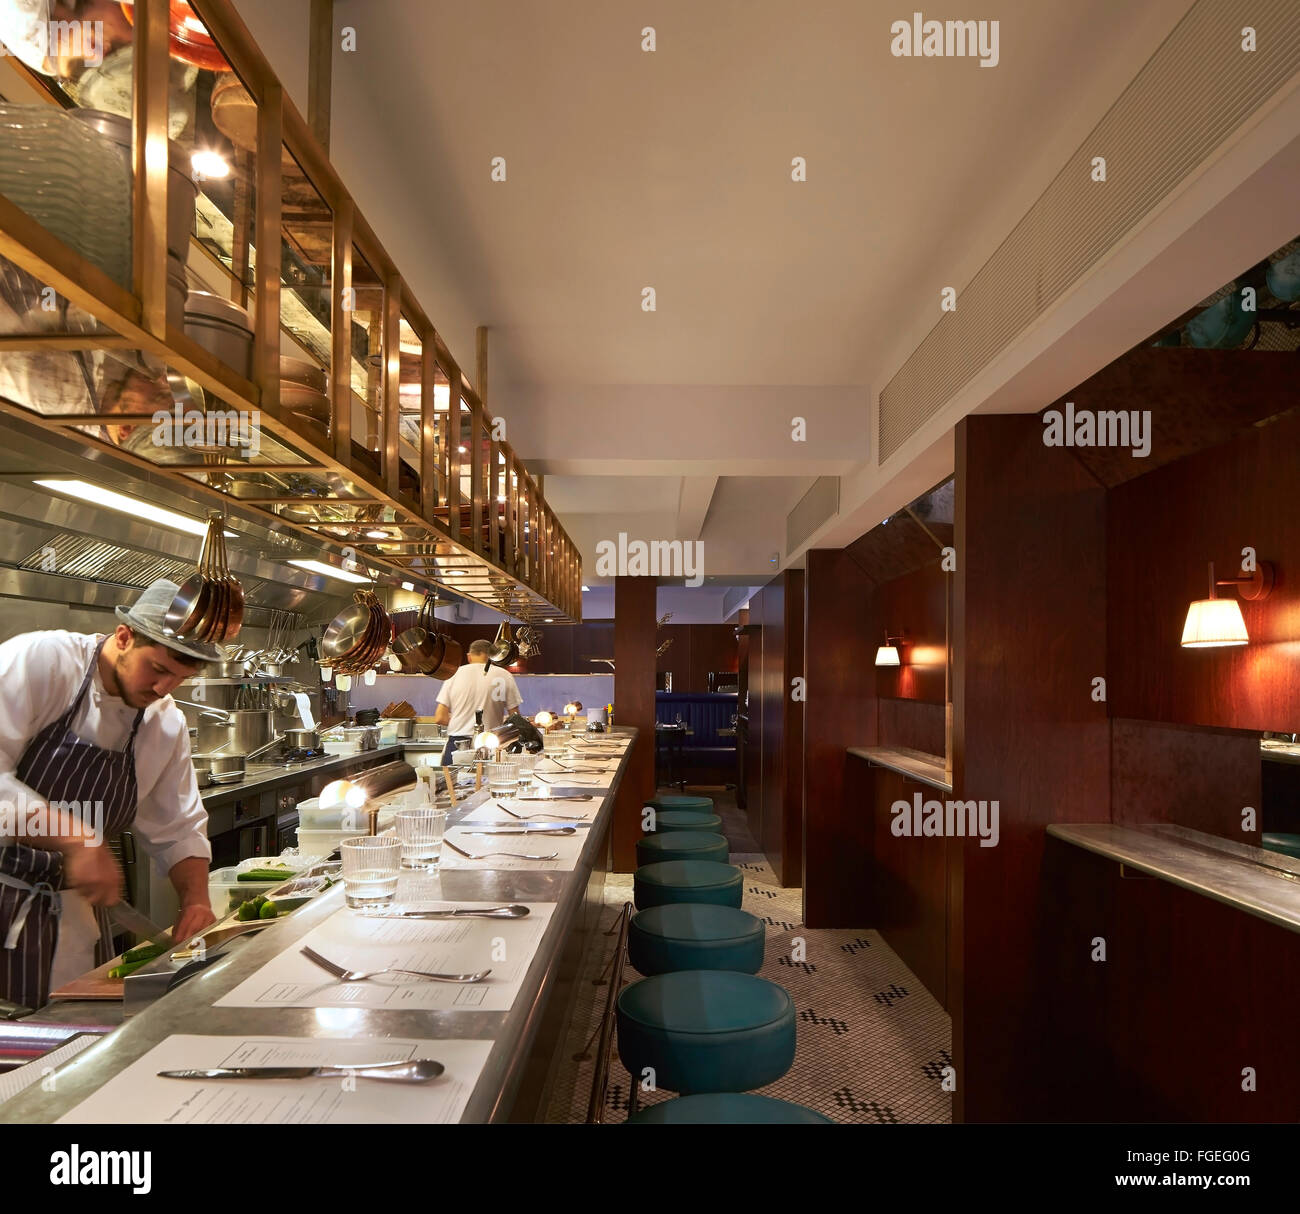 Una Cucina Aperta Con Banco Bar Salotto E Lo Chef All Opera Il Palomar Ristorante Londra Regno Unito Architetto Gundry Duc Foto Stock Alamy